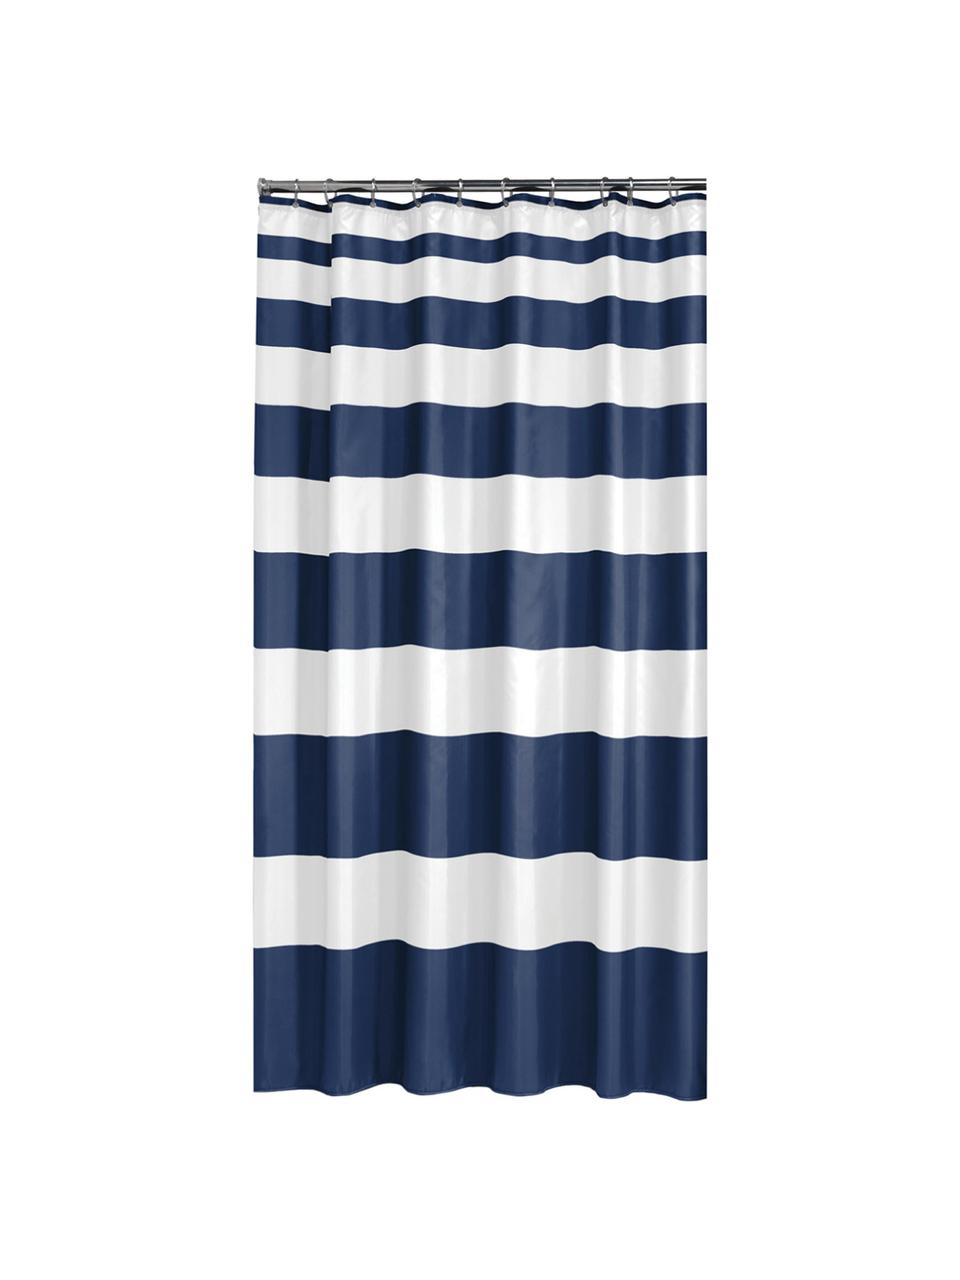 Douchegordijn Nautica met blokstrepen, 100% polyester
Waterafstotend, niet waterdicht, Blauw, wit, 180 x 200 cm